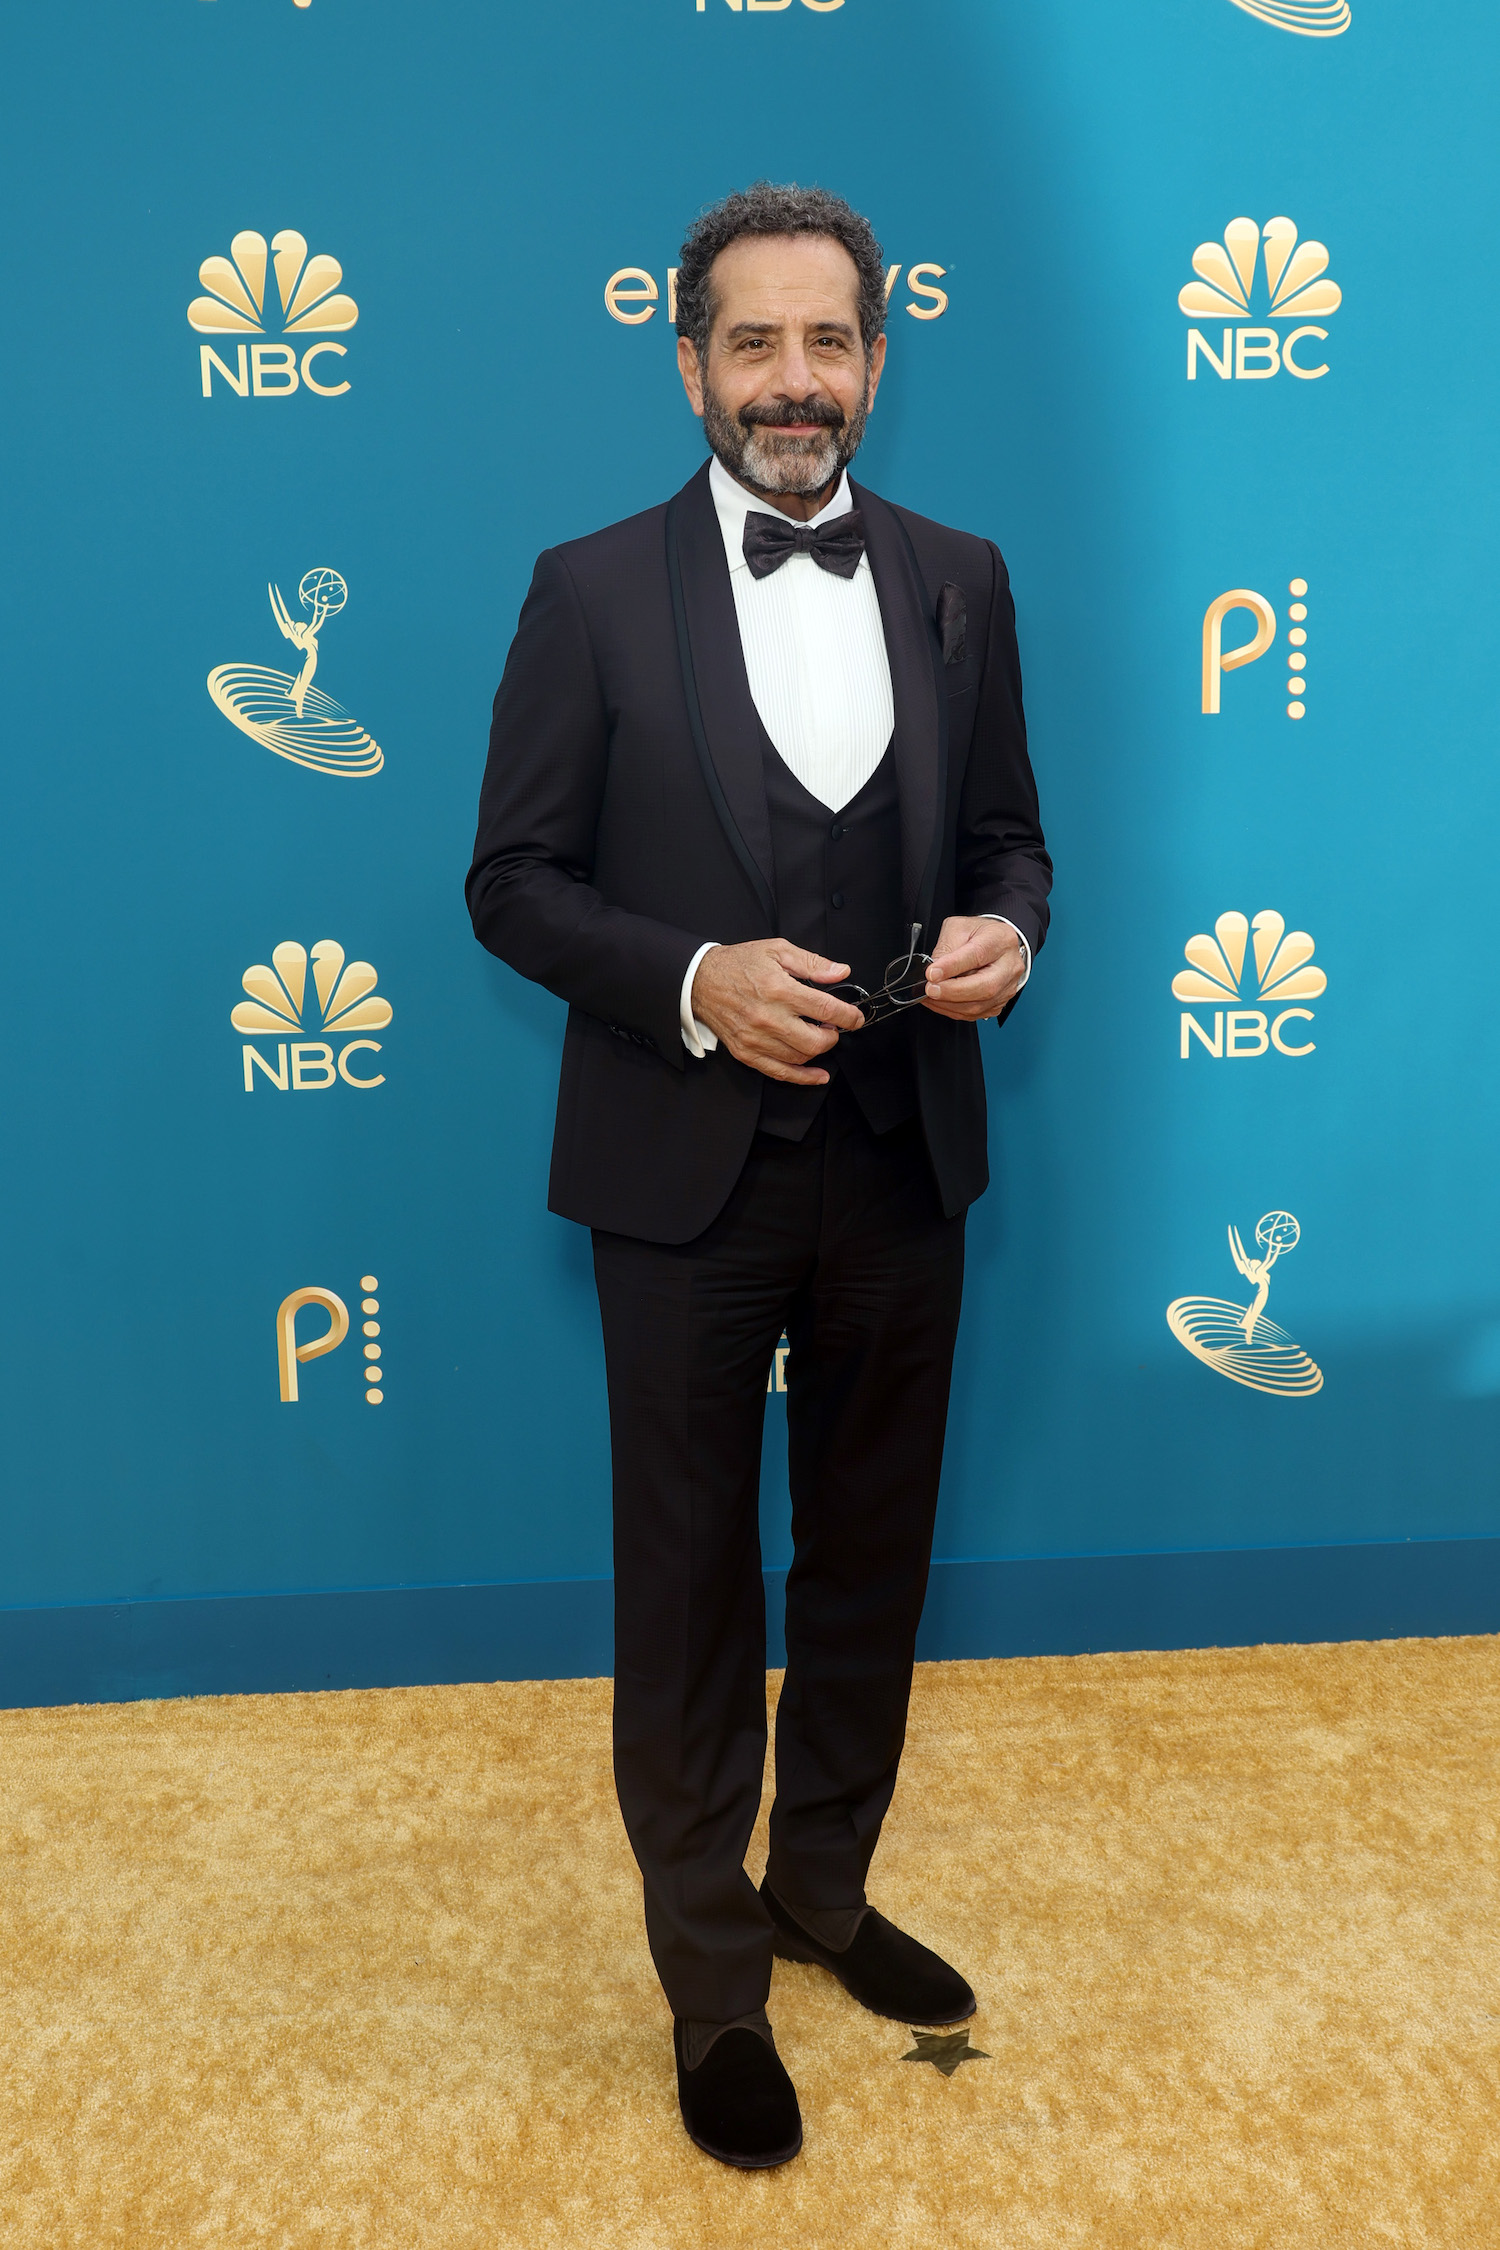 Tony Shalhoub at the 2022 Emmys